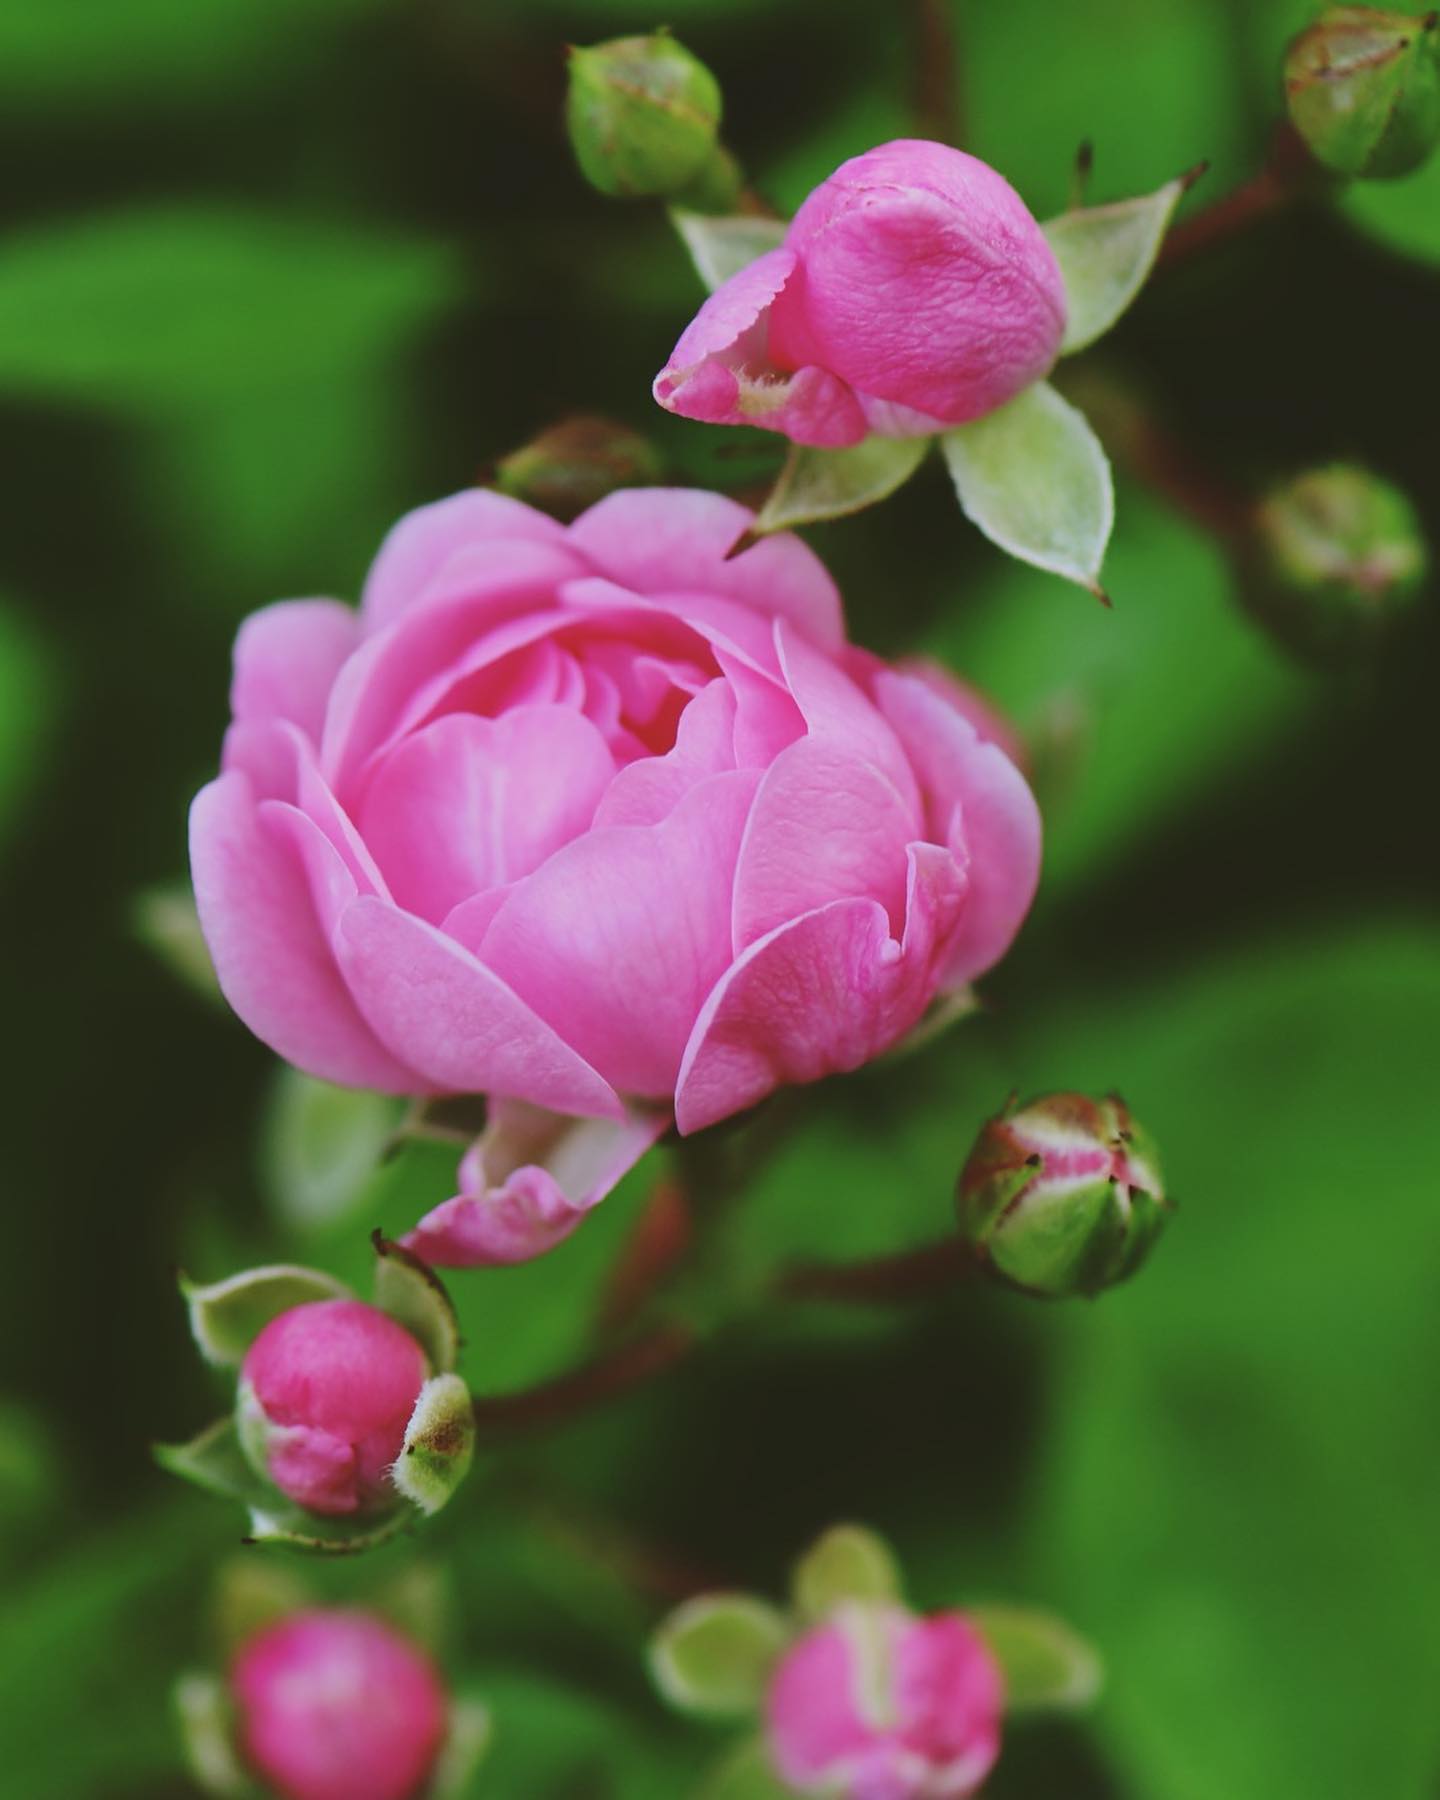 verdens mest populære bunddækkende rose som er skøn og mørk lyserød eller mørk rosa